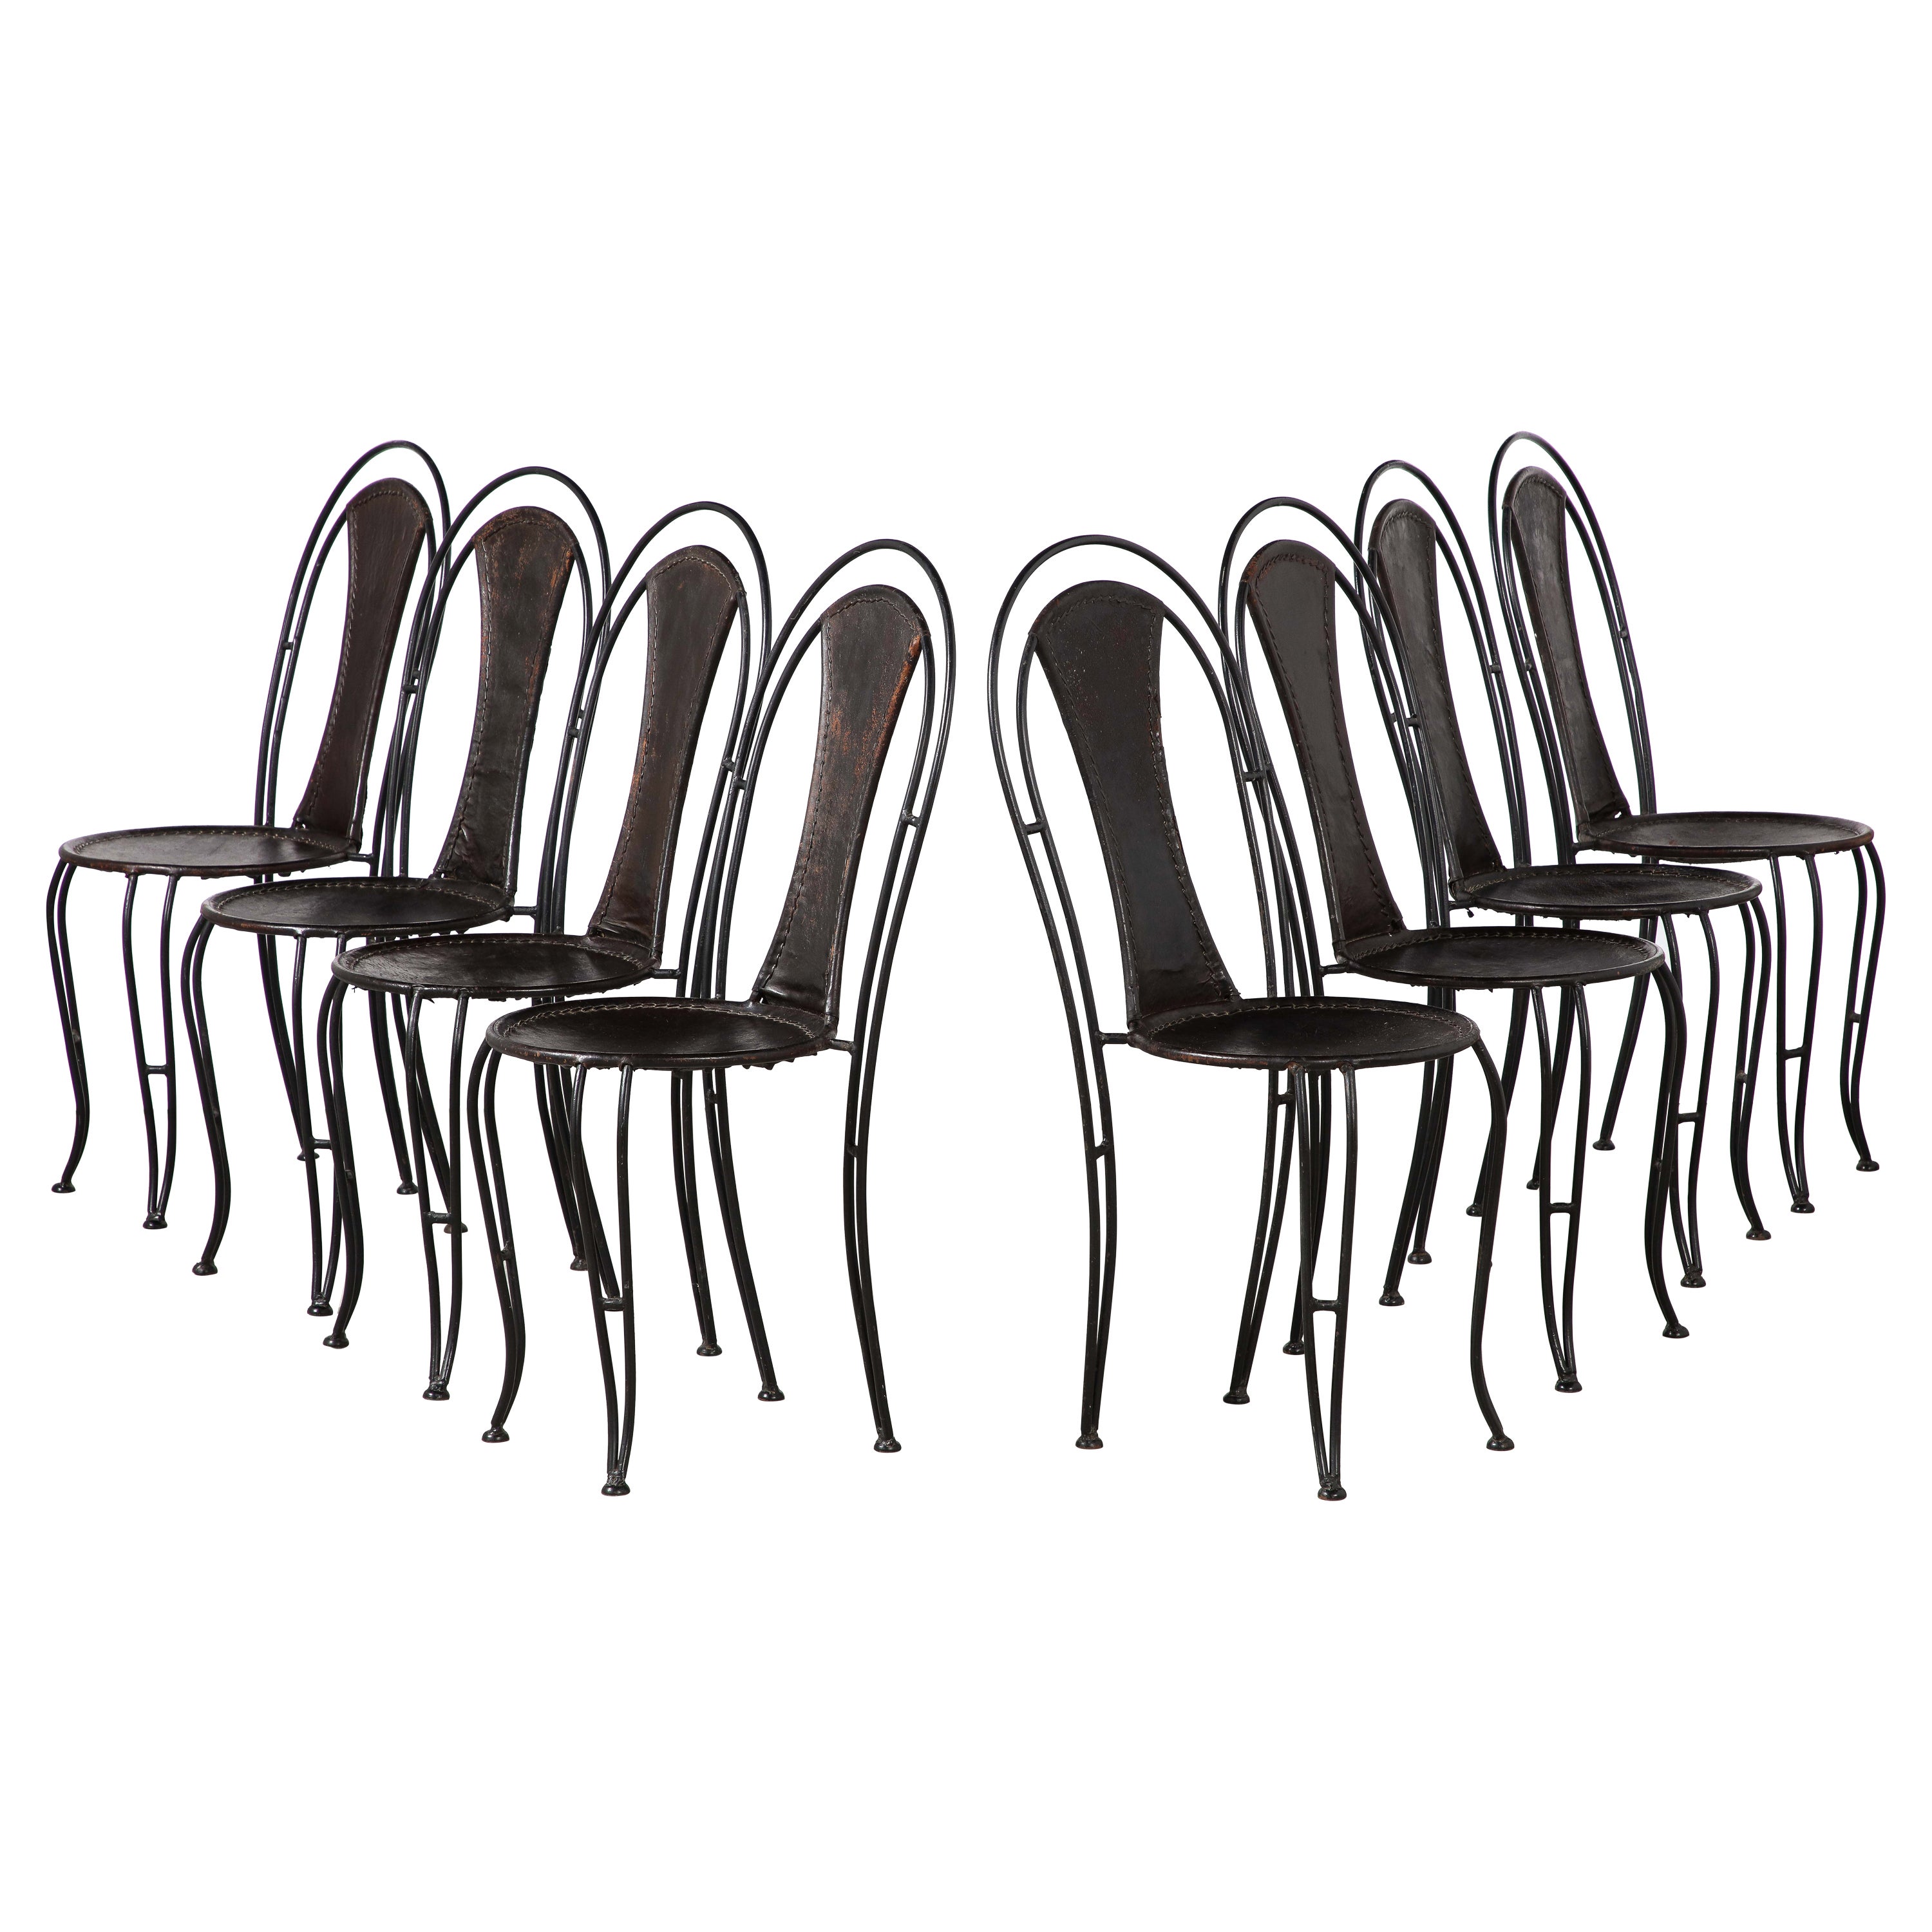 Ensemble de 8 chaises de salle à manger italiennes en cuir et métal, datant d'environ 1960